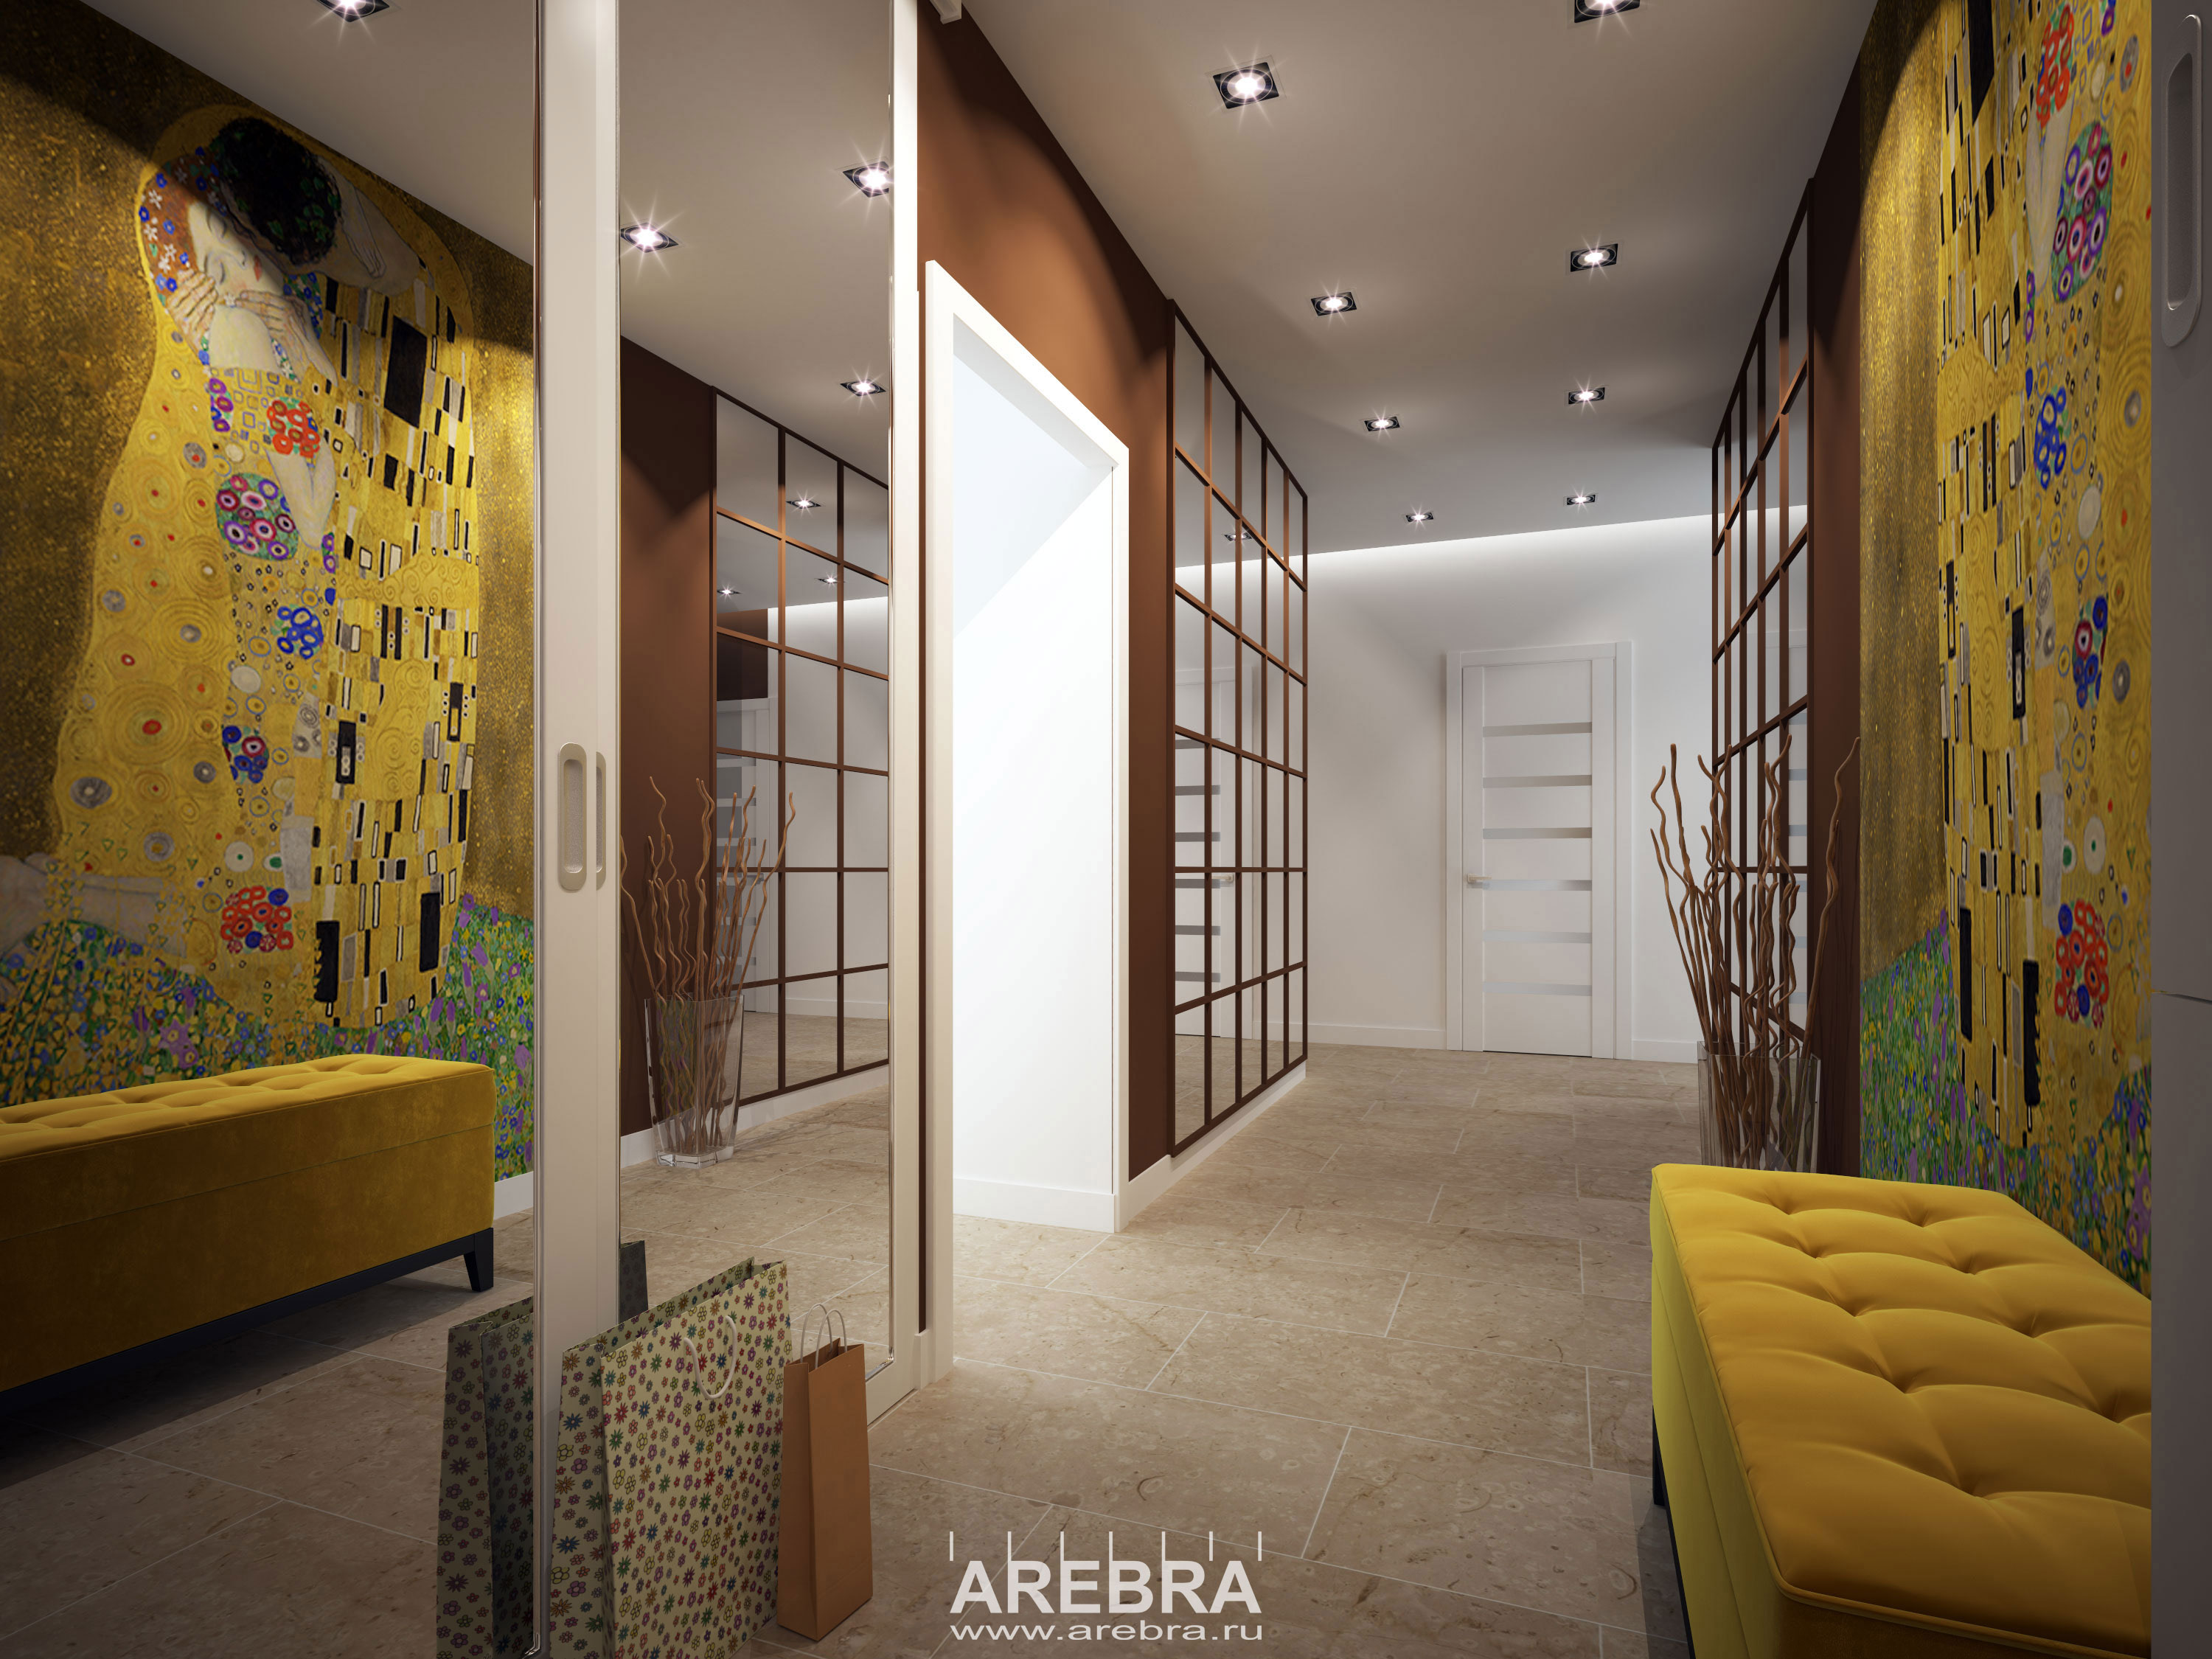 Дизайн проект интерьера квартиры в г.Сосновый Бор, площадью 84 кв.м.